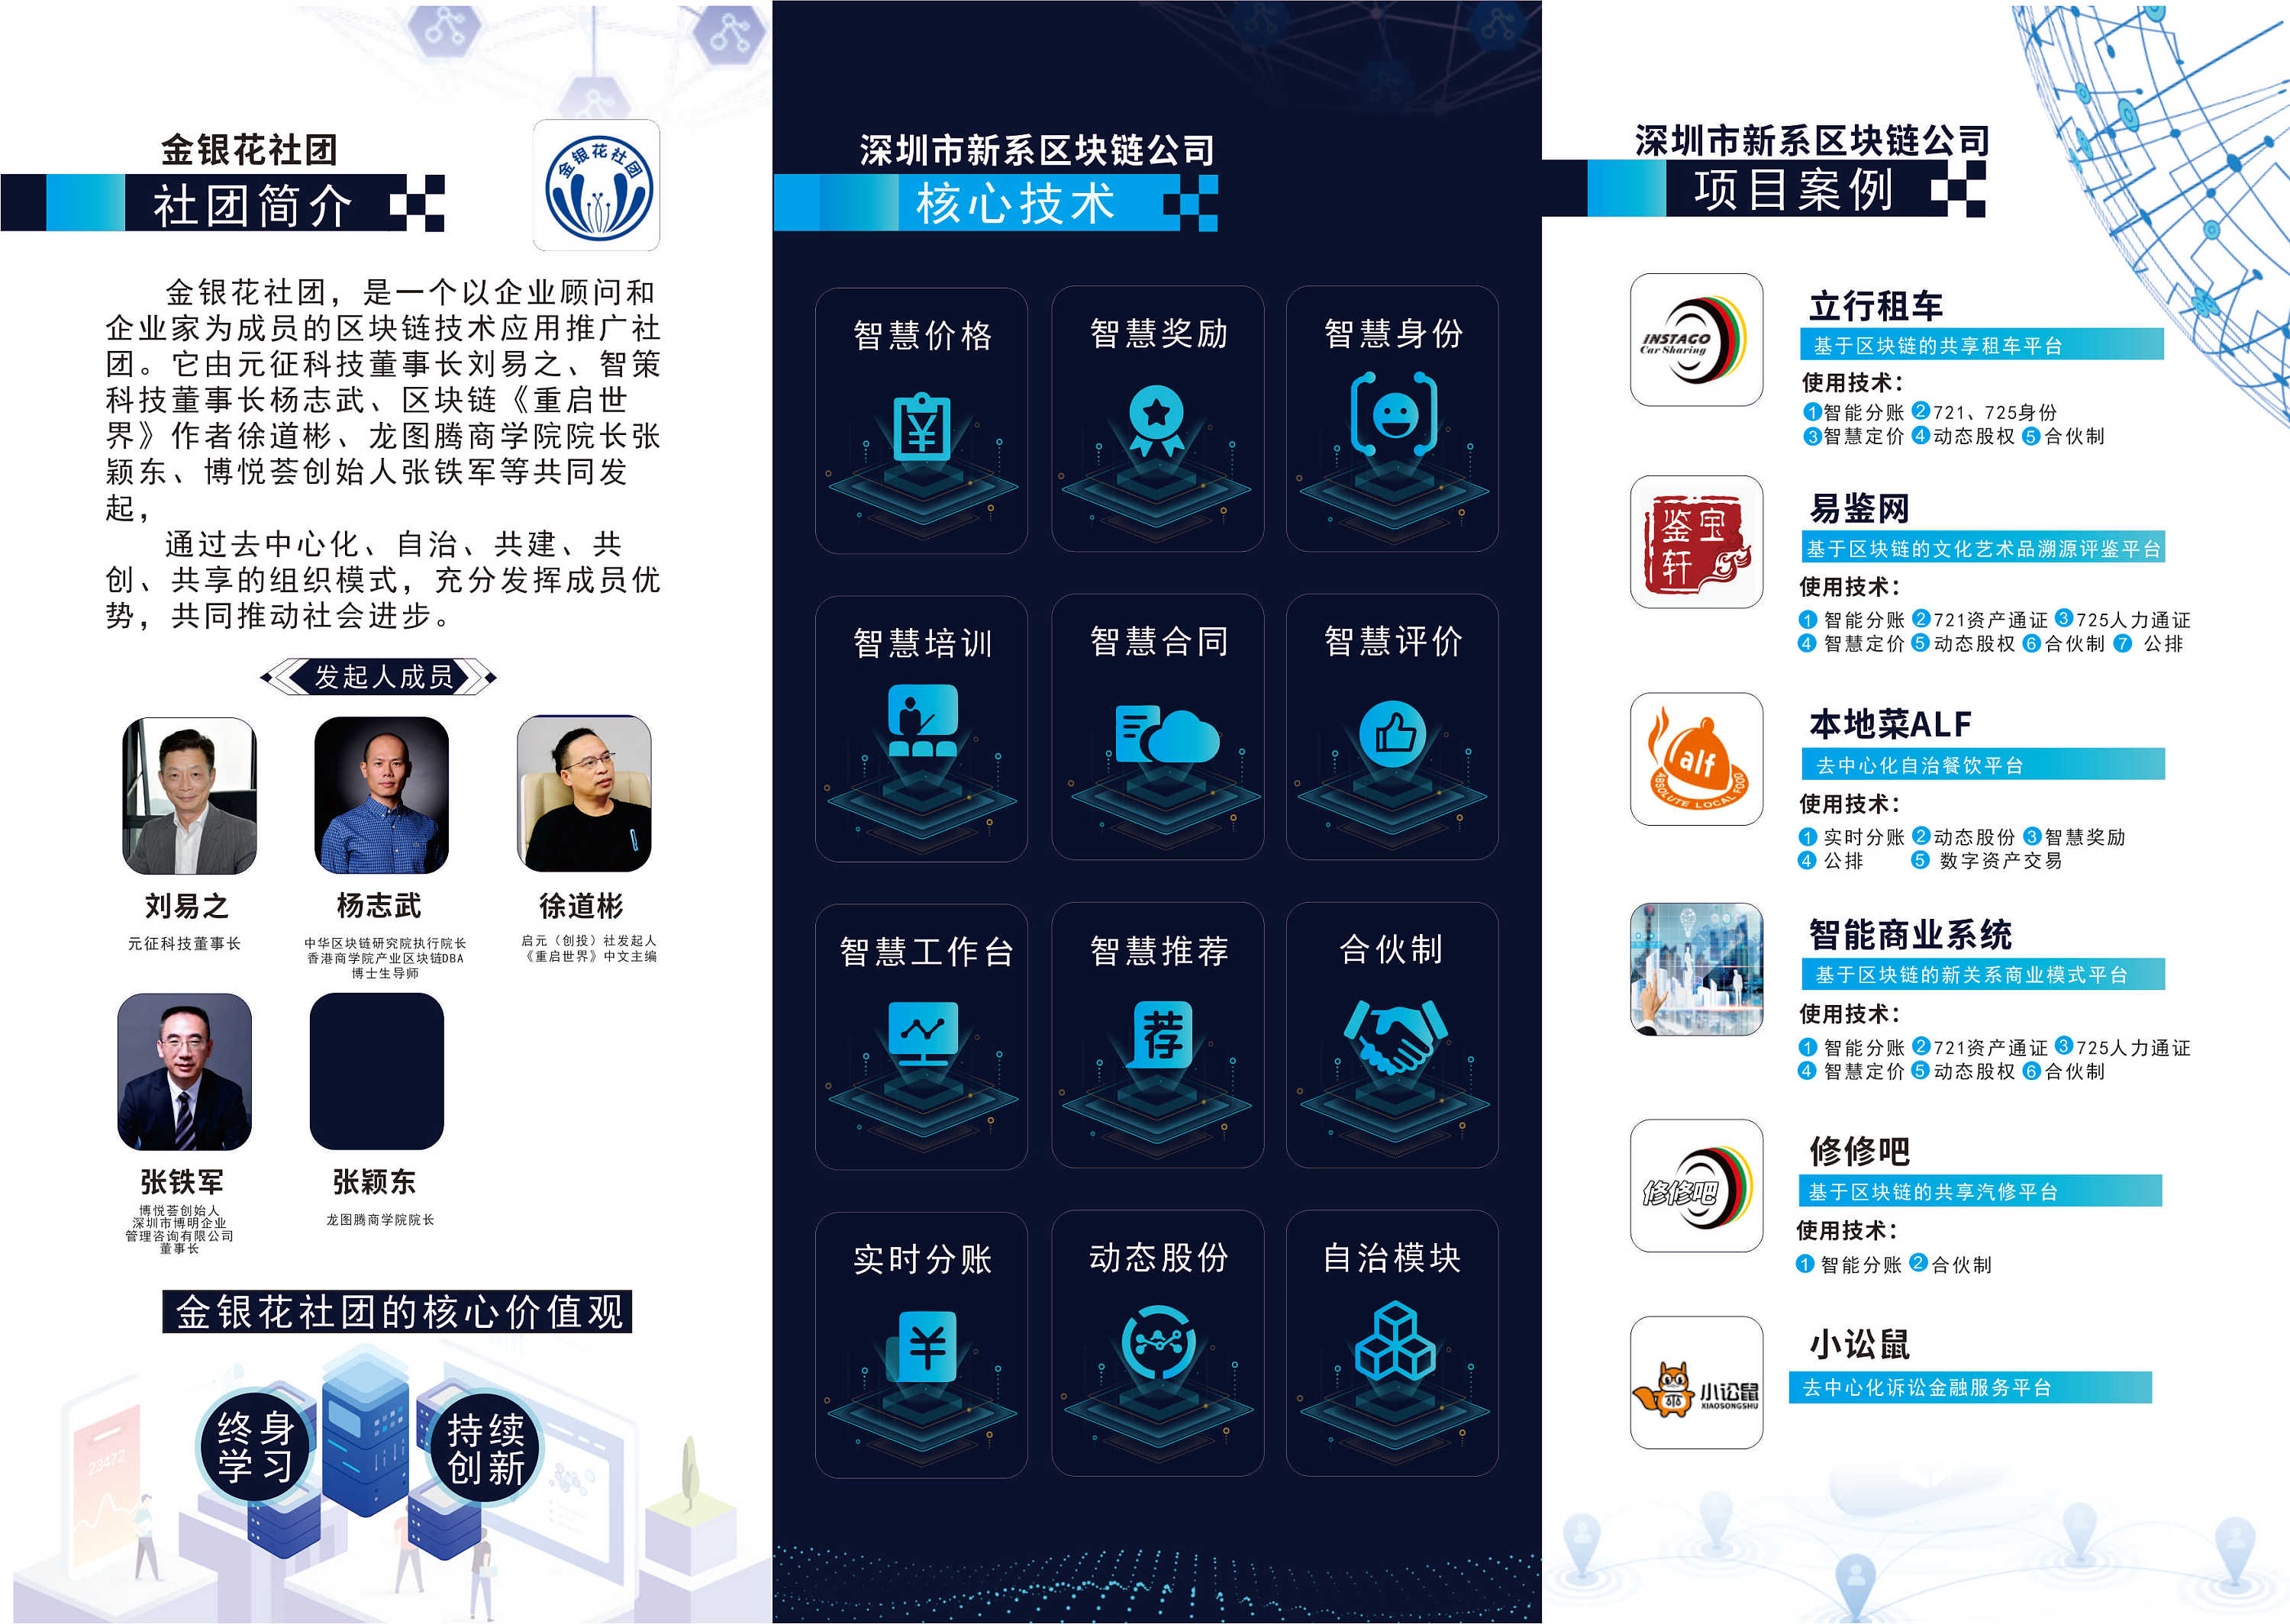 中国区块链发展现状数据总览 - 知乎